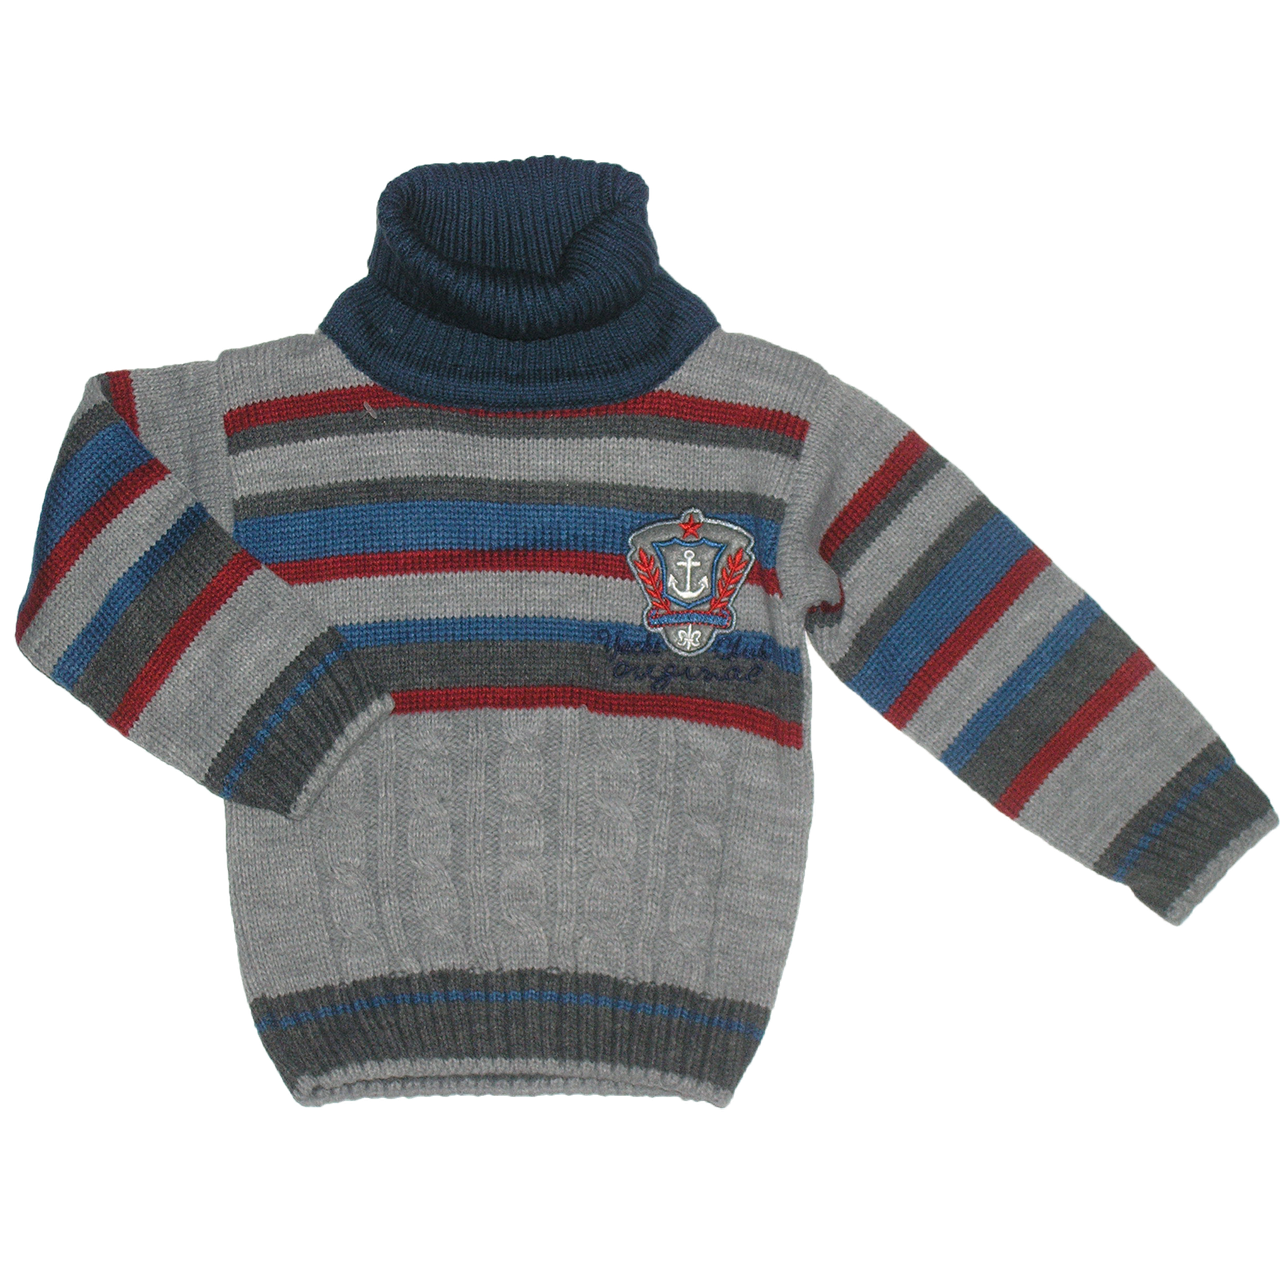 jersey clipart woolen sweater